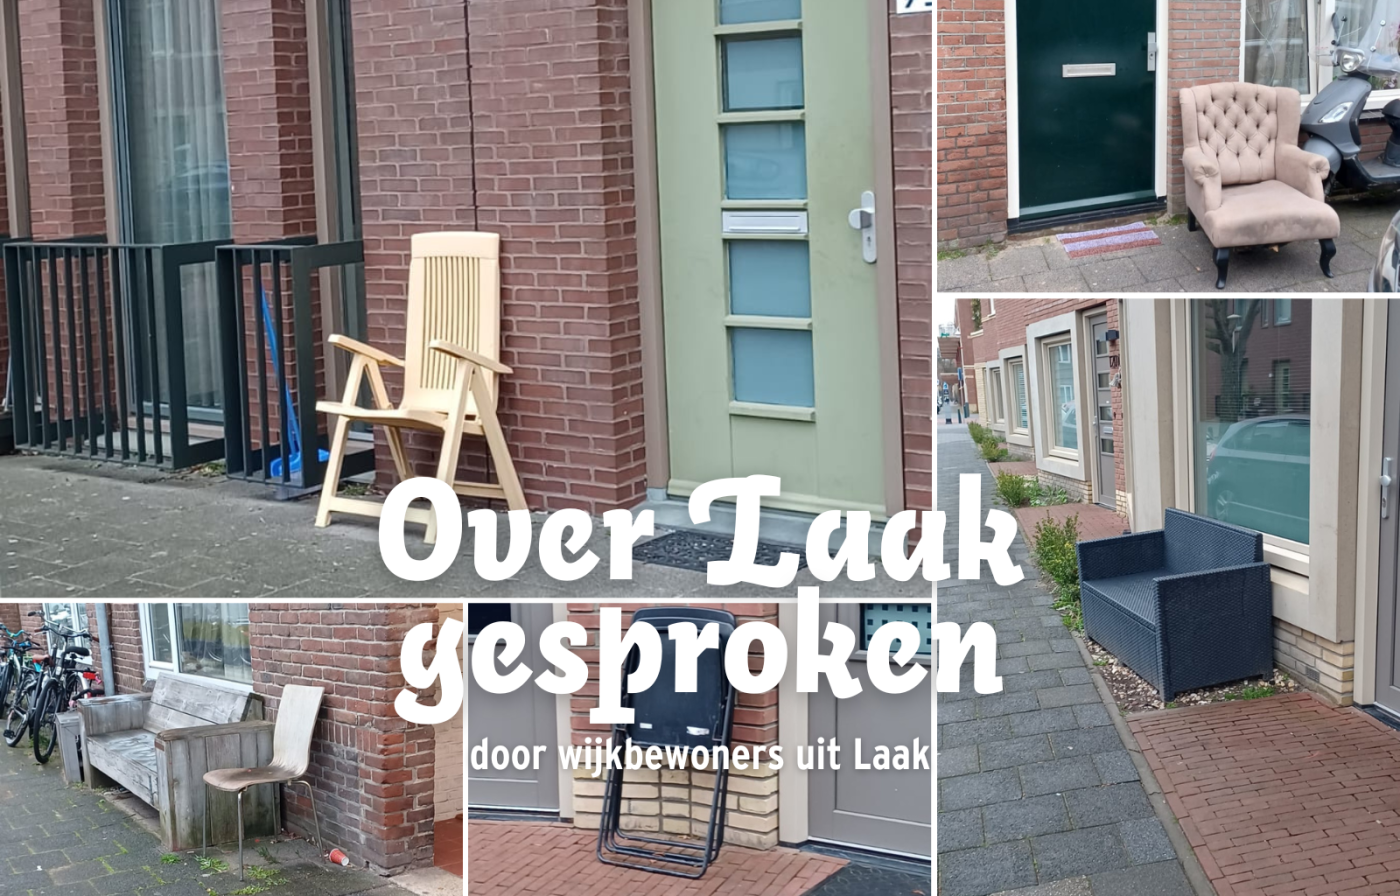 Project Spoorwijk foto's en spoken word voor nieuws.png